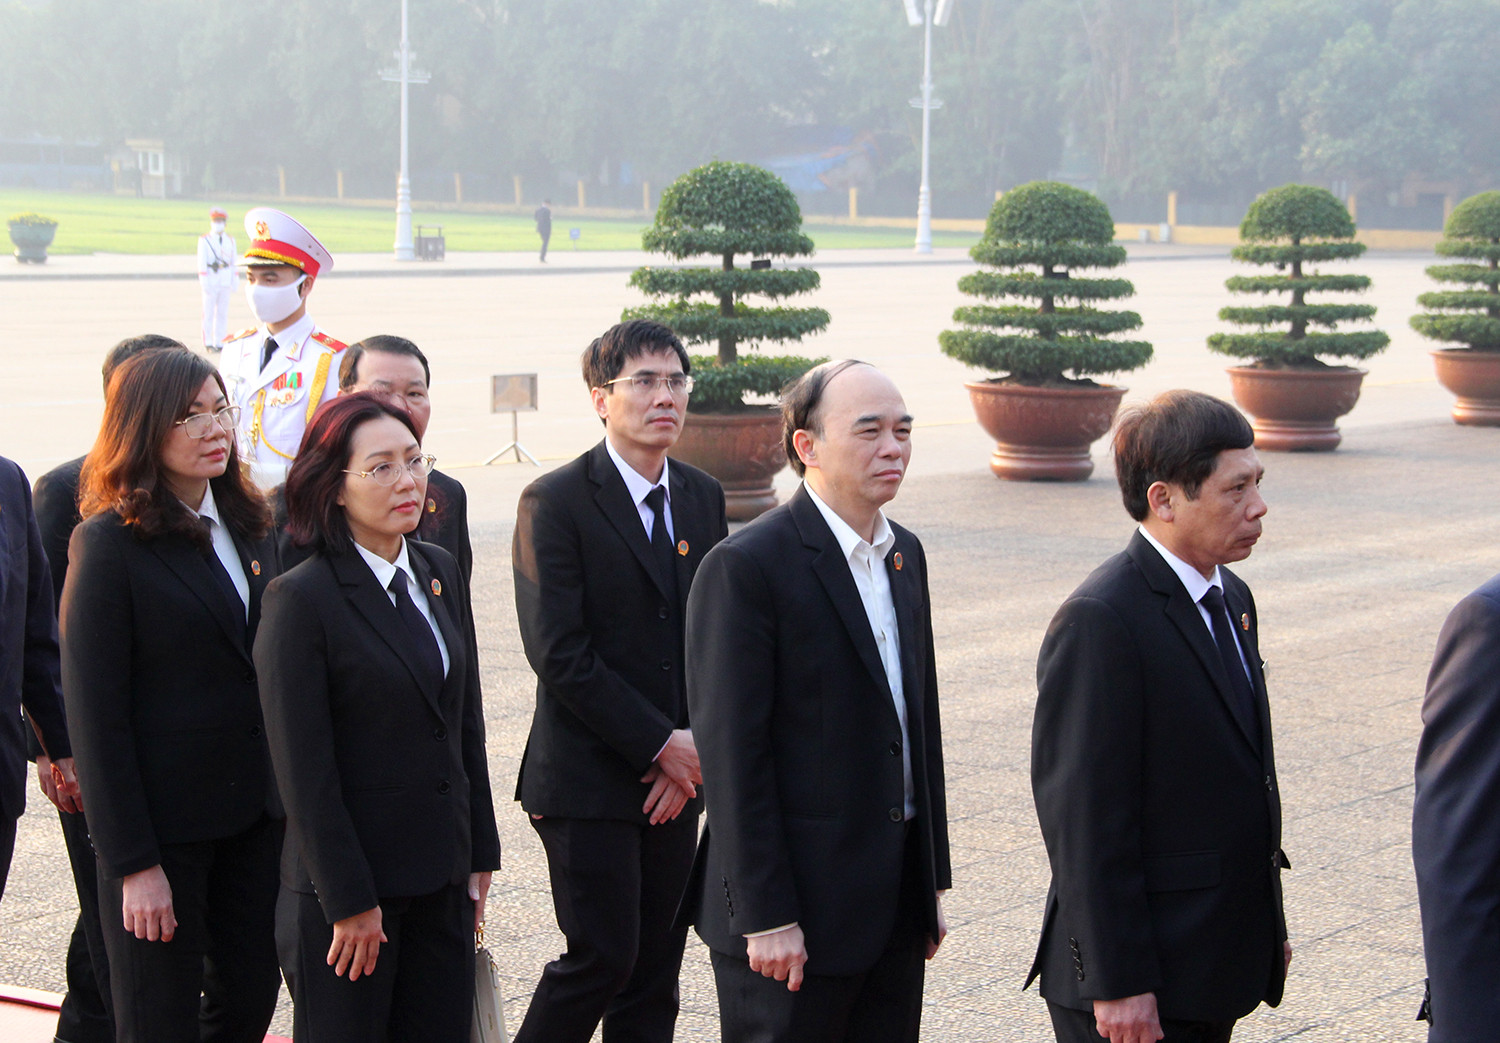 Đoàn đại biểu Tòa án vào Lăng viếng Chủ tịch Hồ Chí Minh